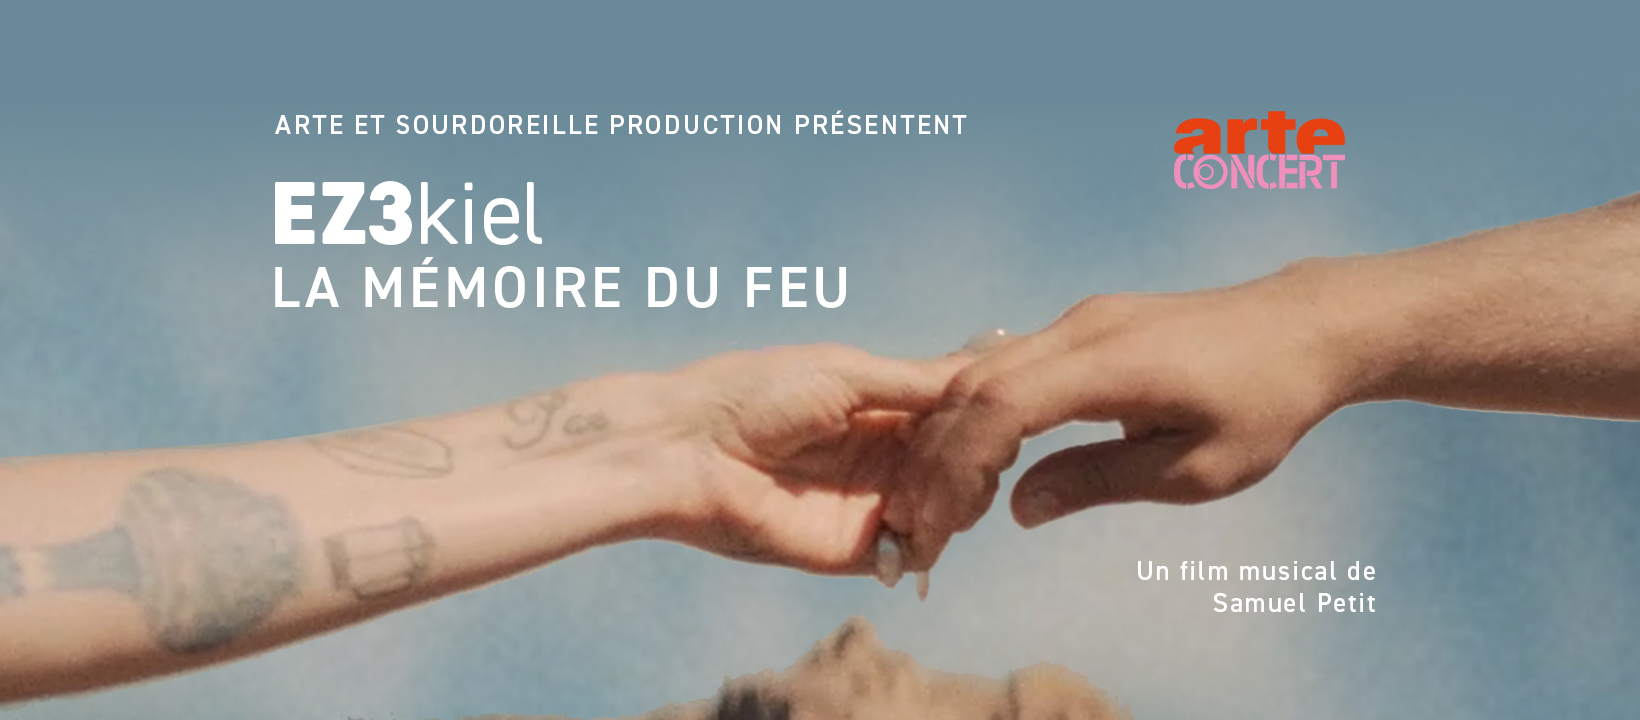 Arte Concert - EZ3kiel "La Mémoire du Feu"